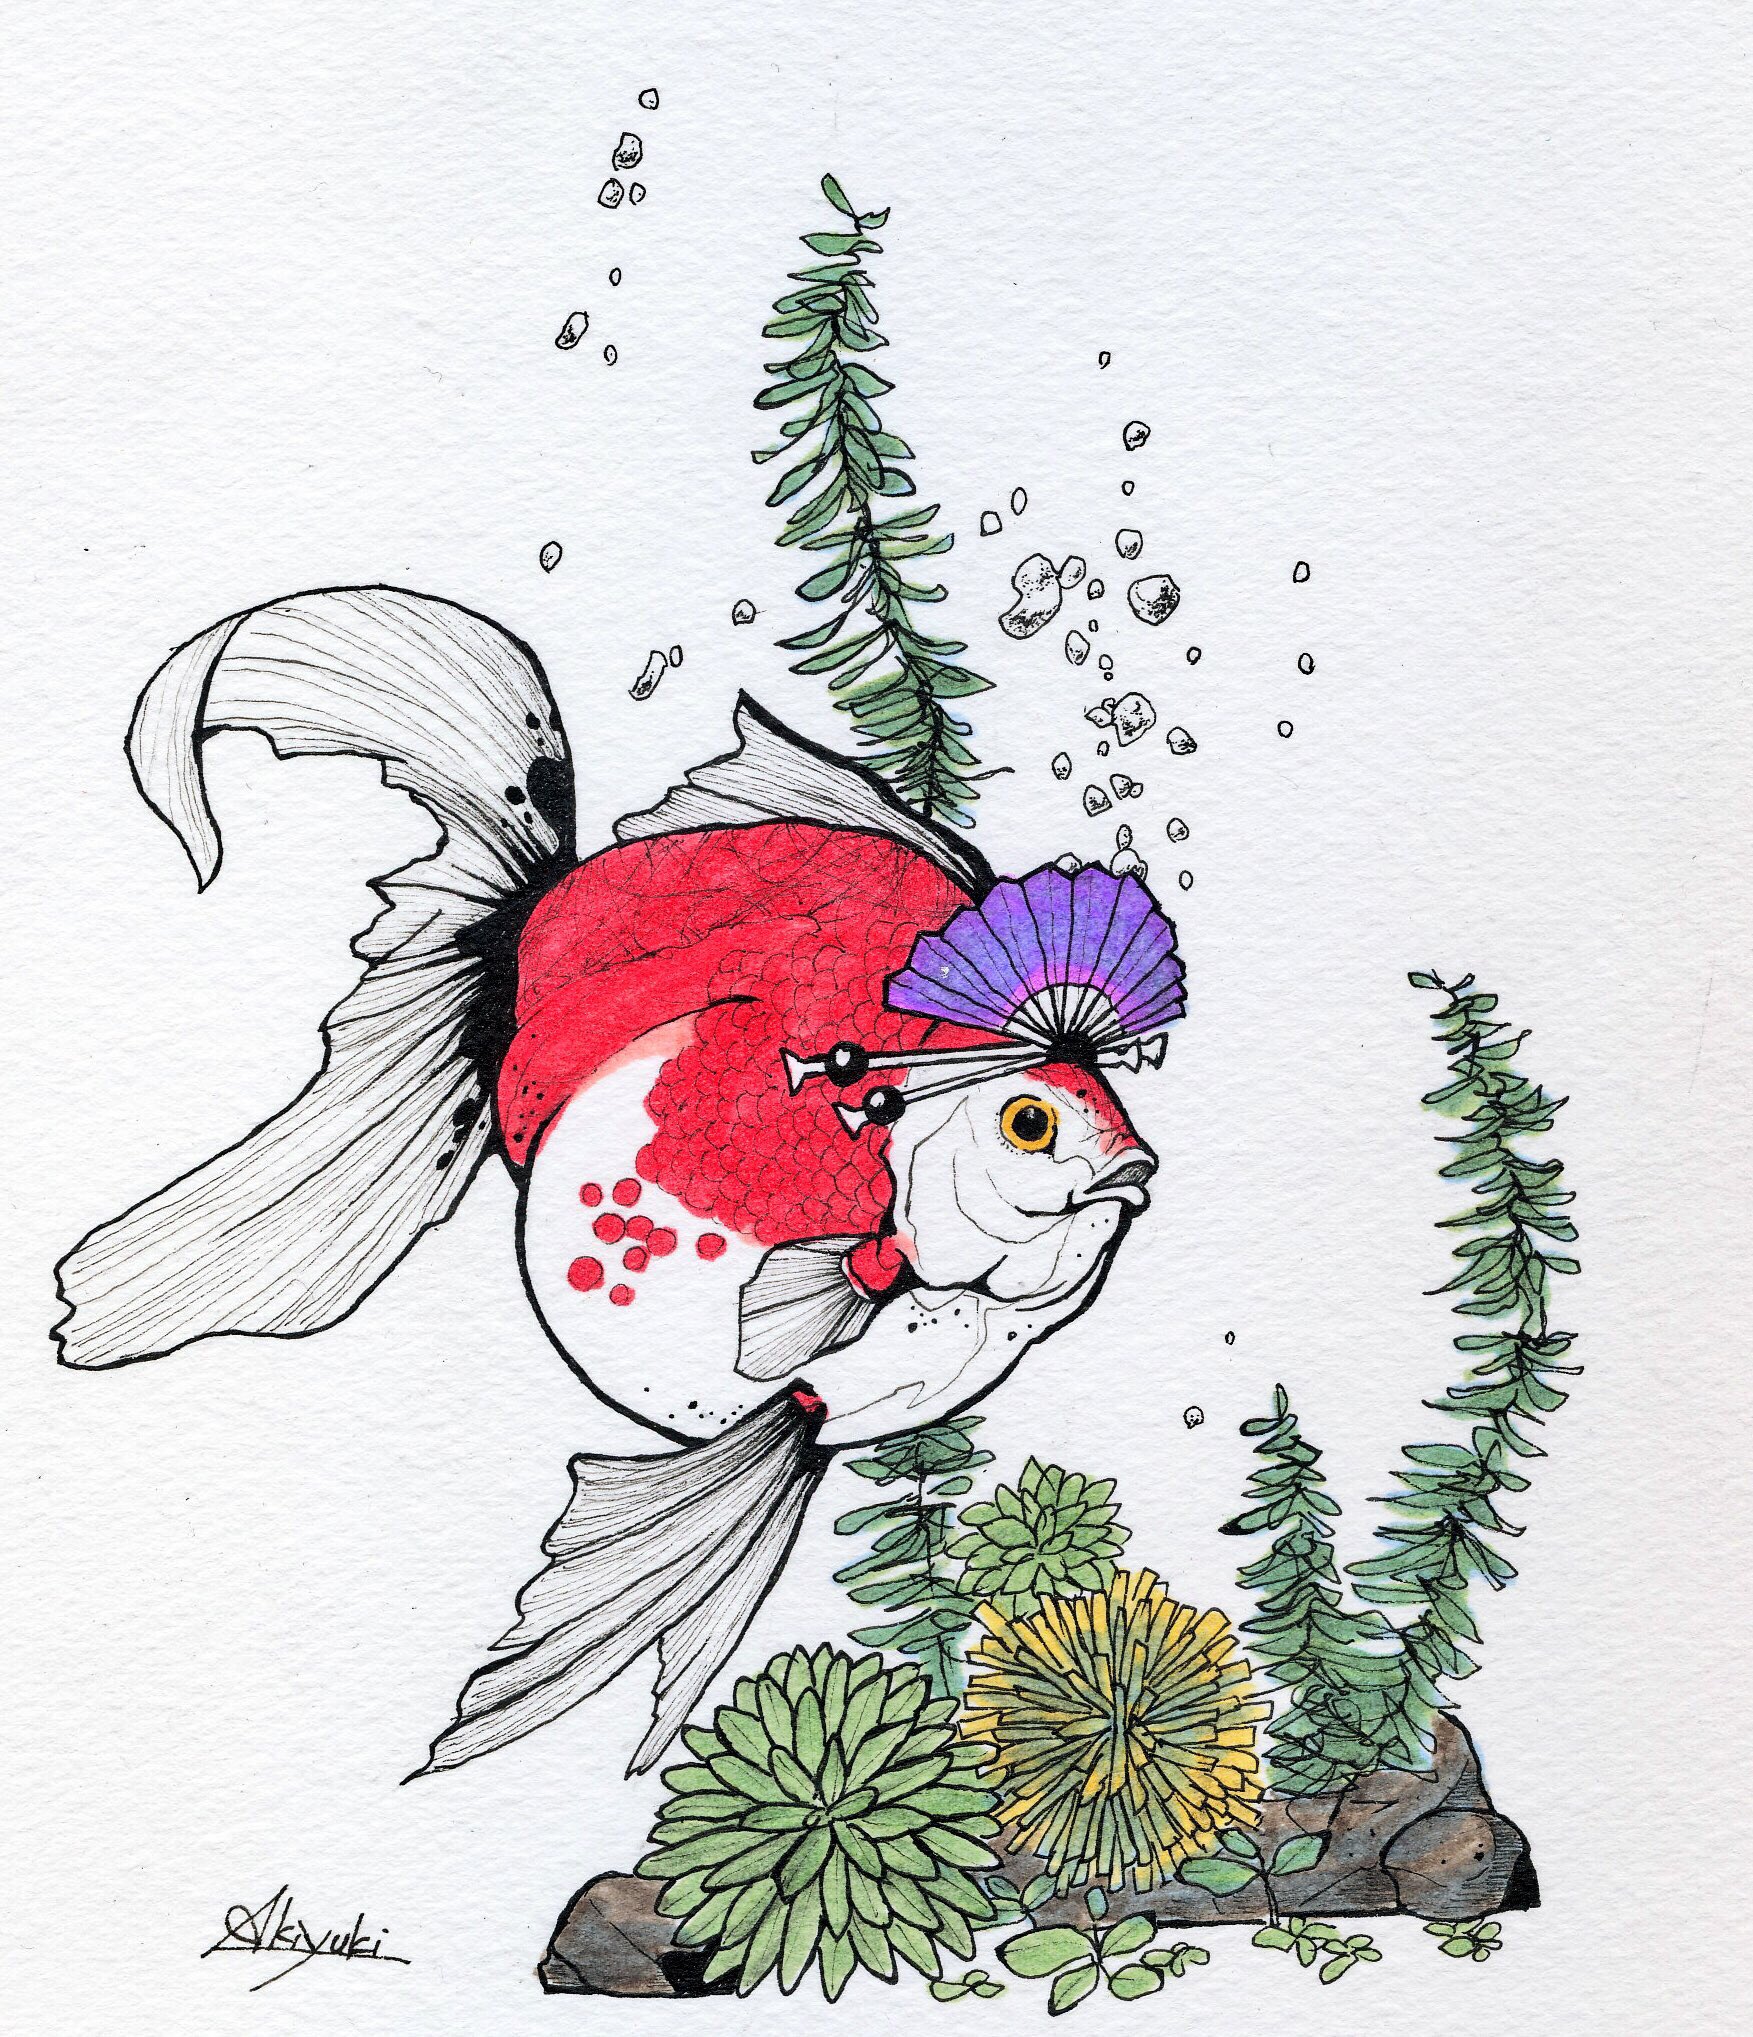 アキユキaq 金魚イラストもう一つありましたϵ 8 花魁金魚 金魚 金魚イラスト 残暑見舞い コピック 動物イラスト コピック絵を流してコピック民を増やそう